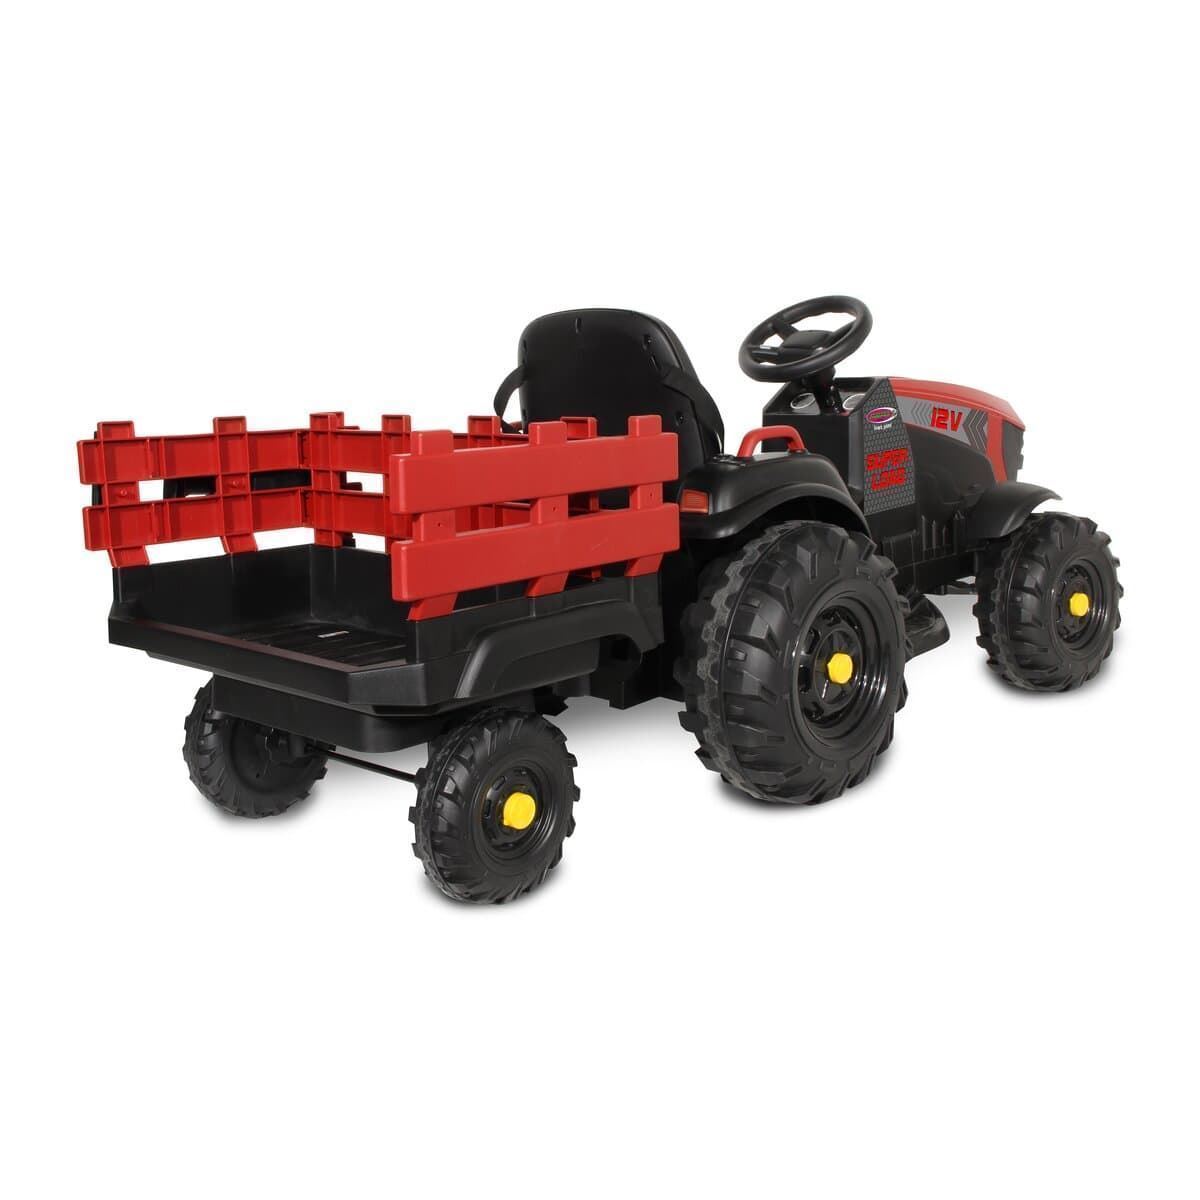 Tractor de batería 12v con remolque rojo jamara 460895 - Imagen 5